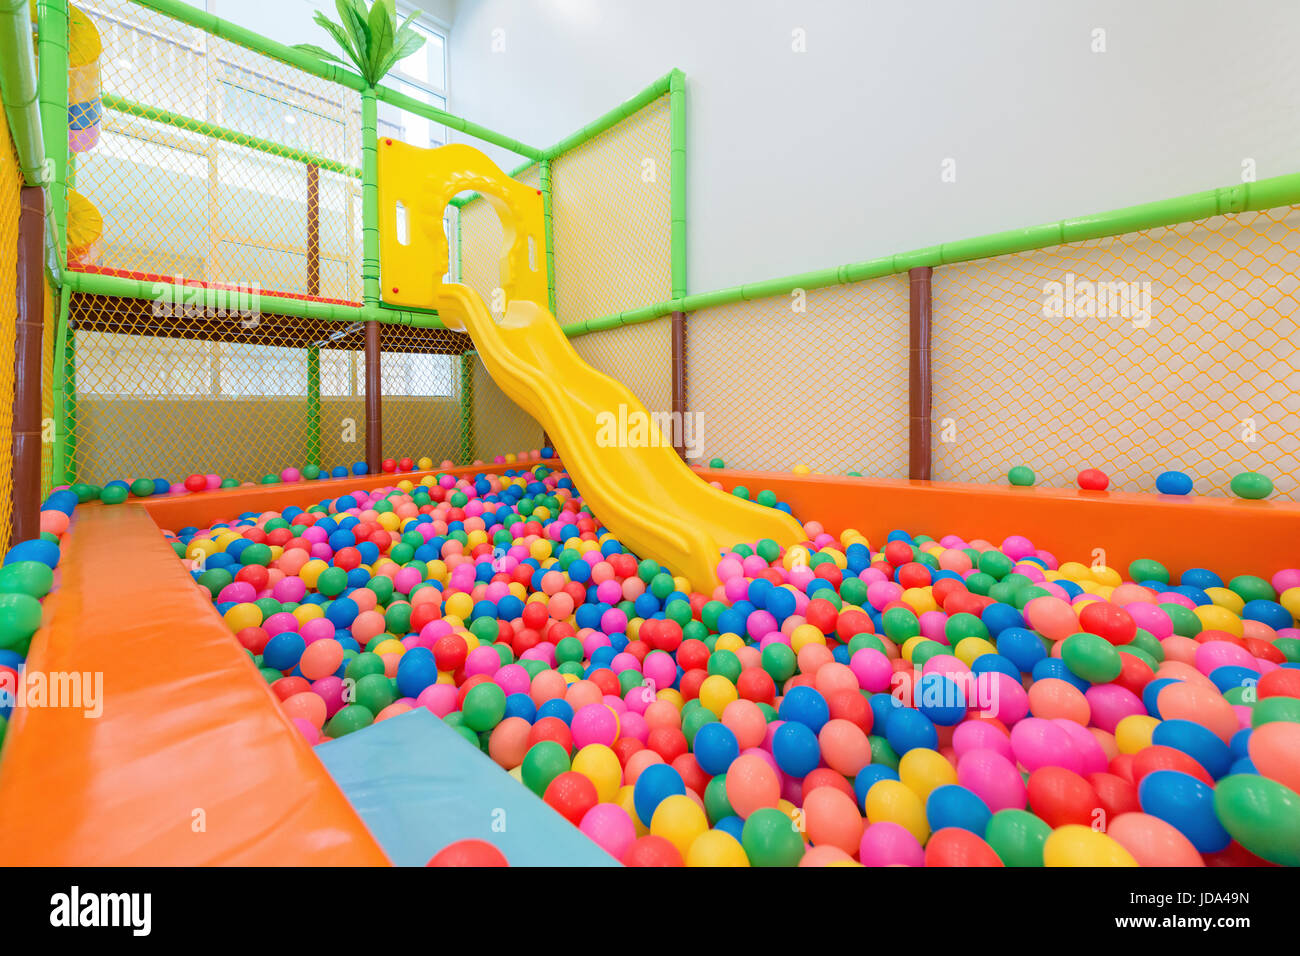 Parque infantil con Control deslizante de plástico amarillo y coloridas bolas de plástico en la piscina. Foto de stock